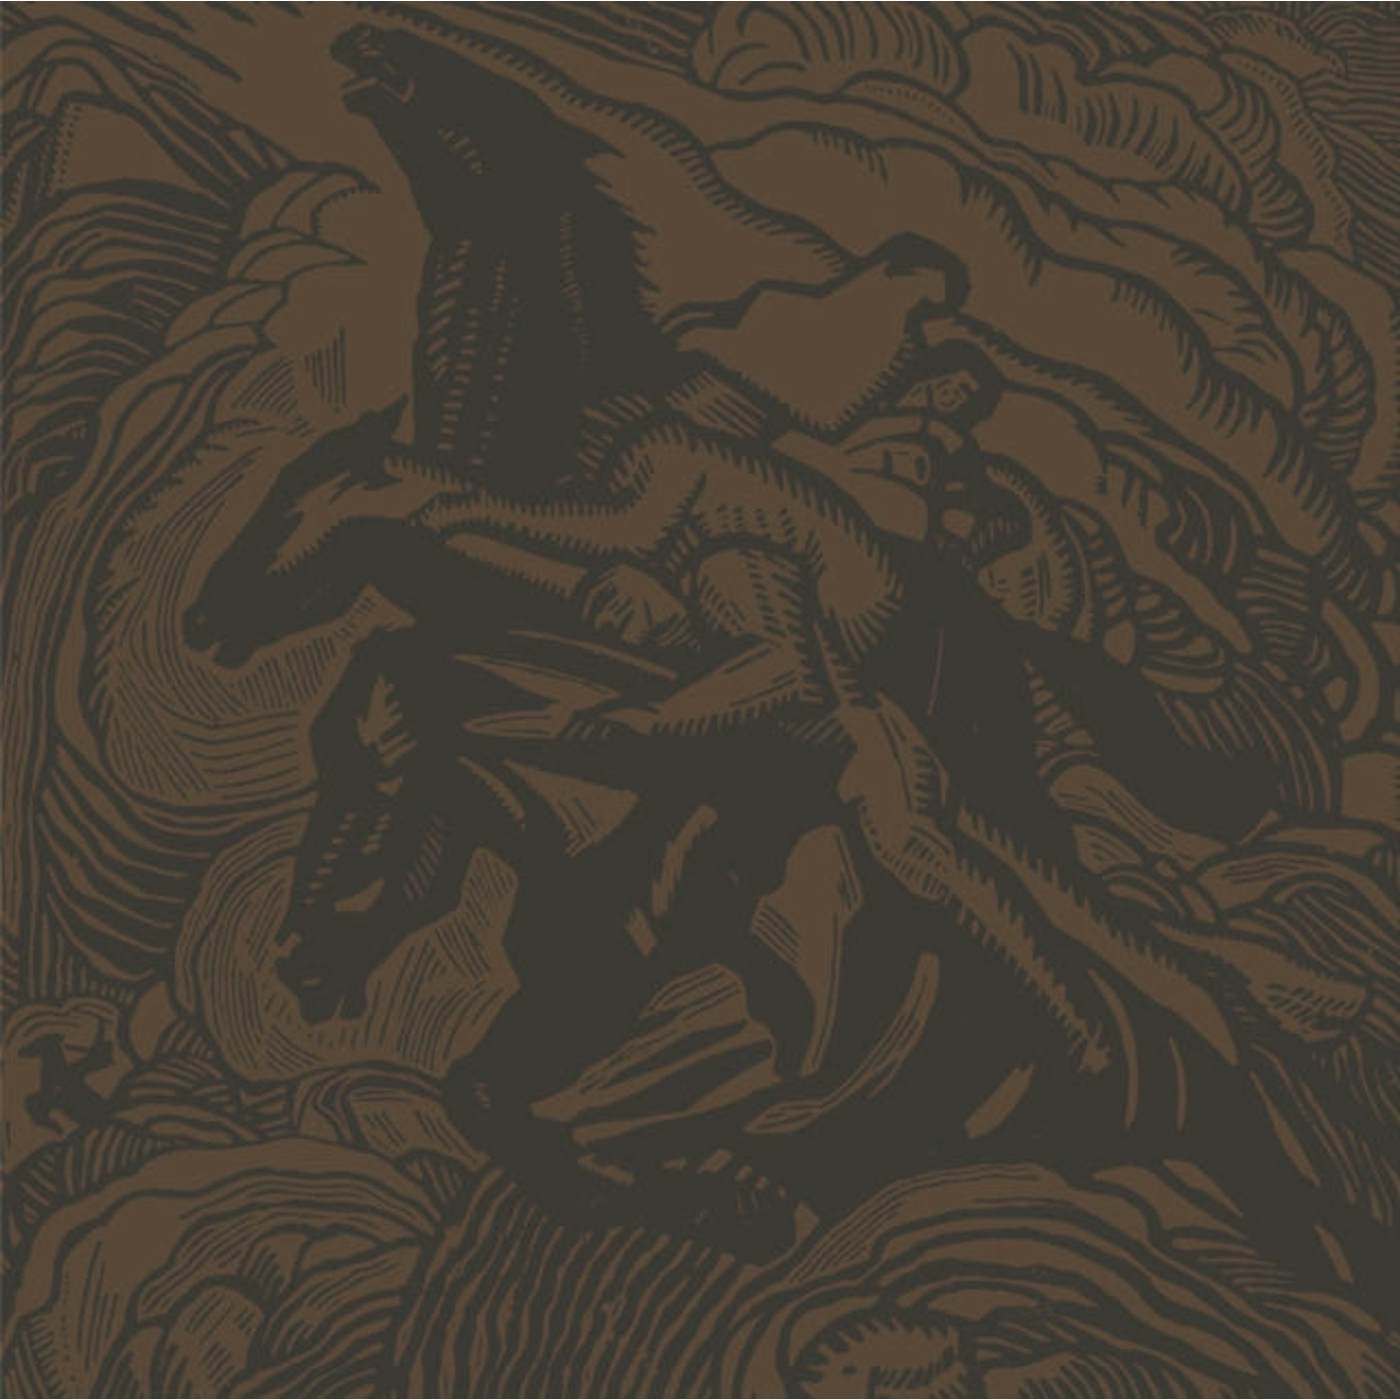 Sunn 0))) LP - Flight Of The Behemoth (Black (Vinyl)